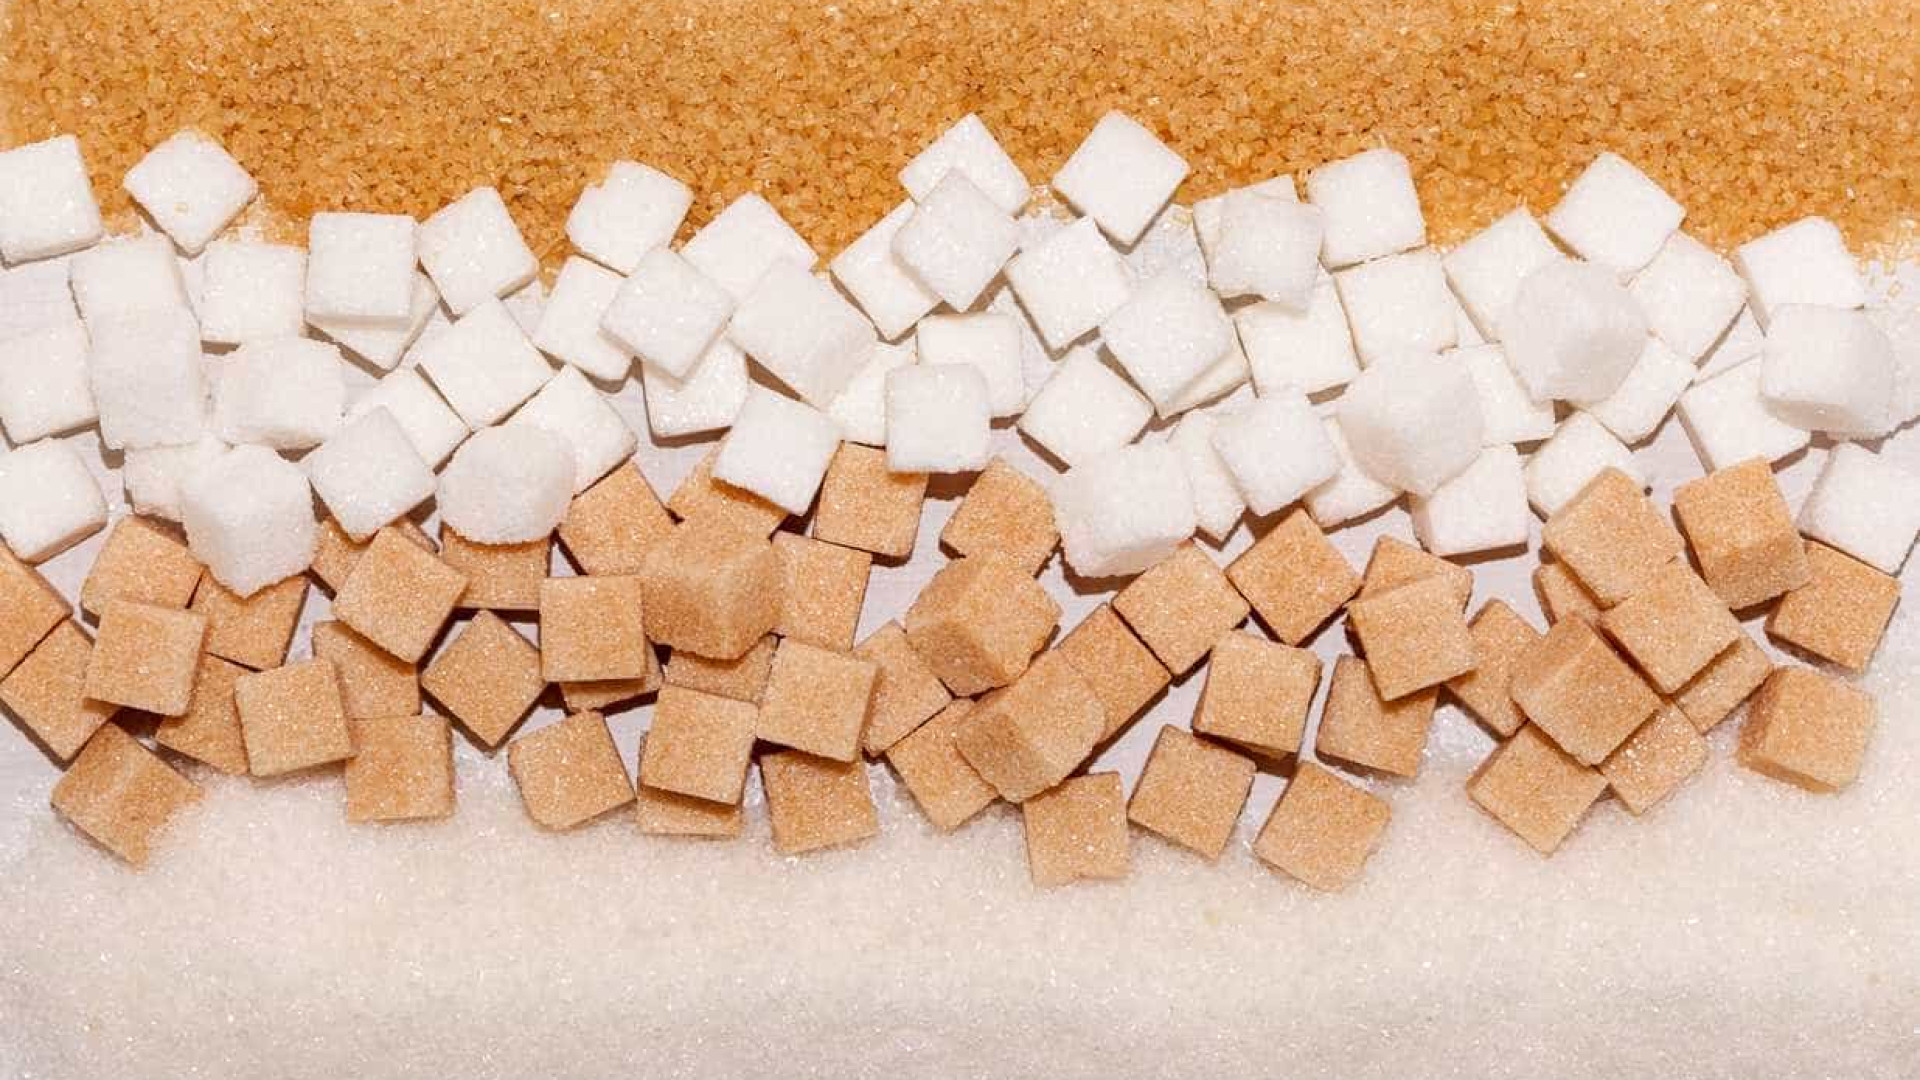 Excesso de açúcar pode levar à depressão, diz estudo